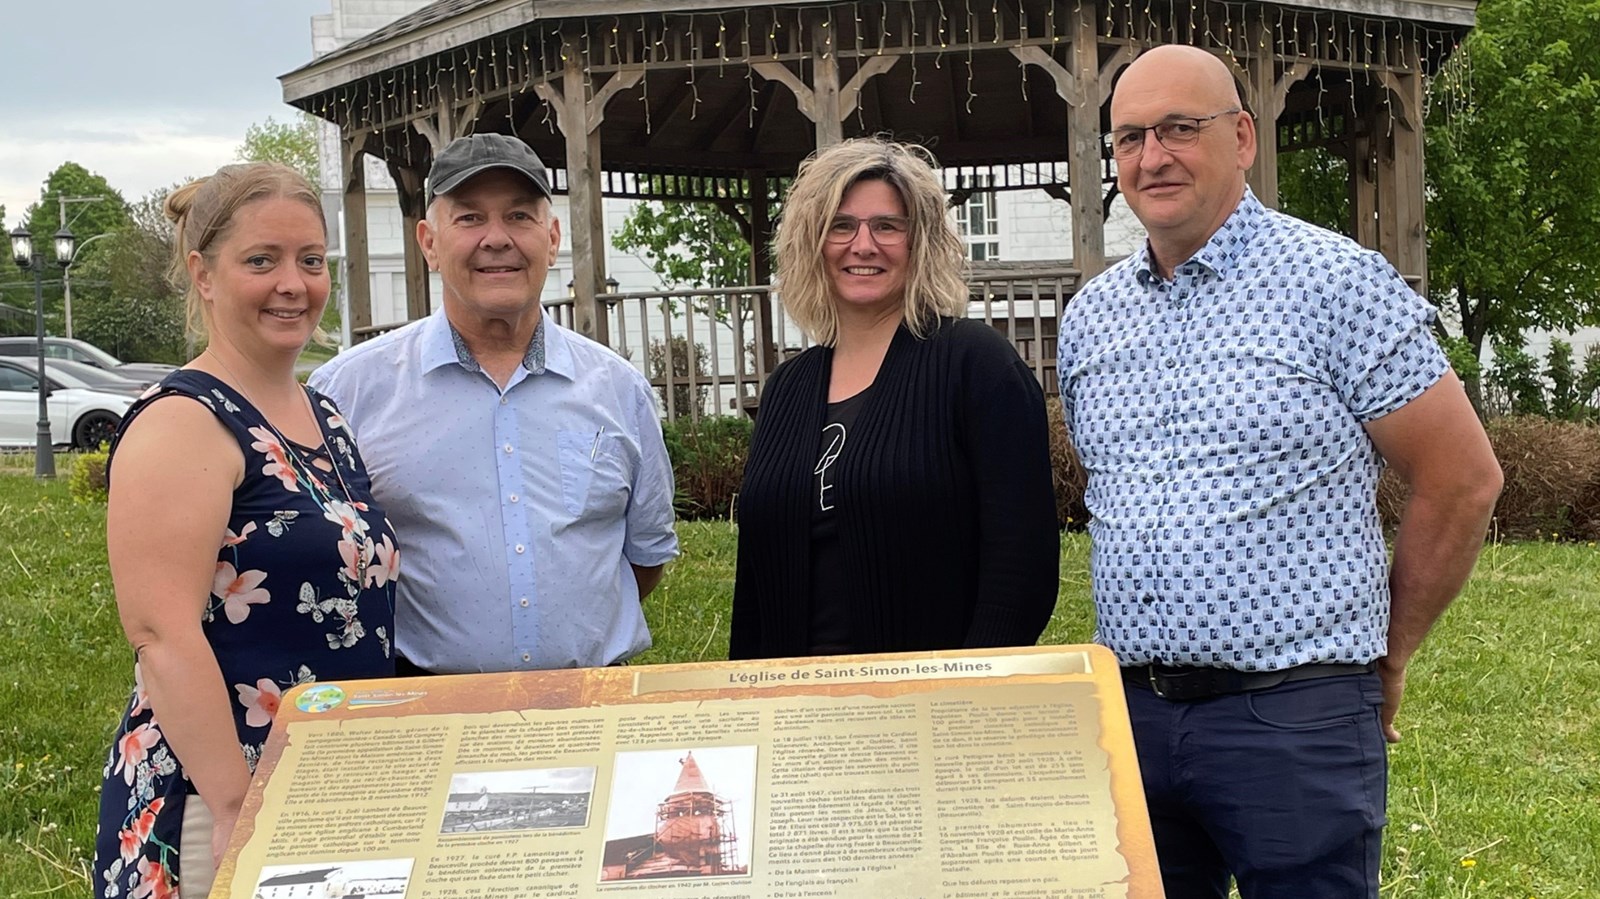 , Un circuit historique inauguré à Saint-Simons-les-Mines